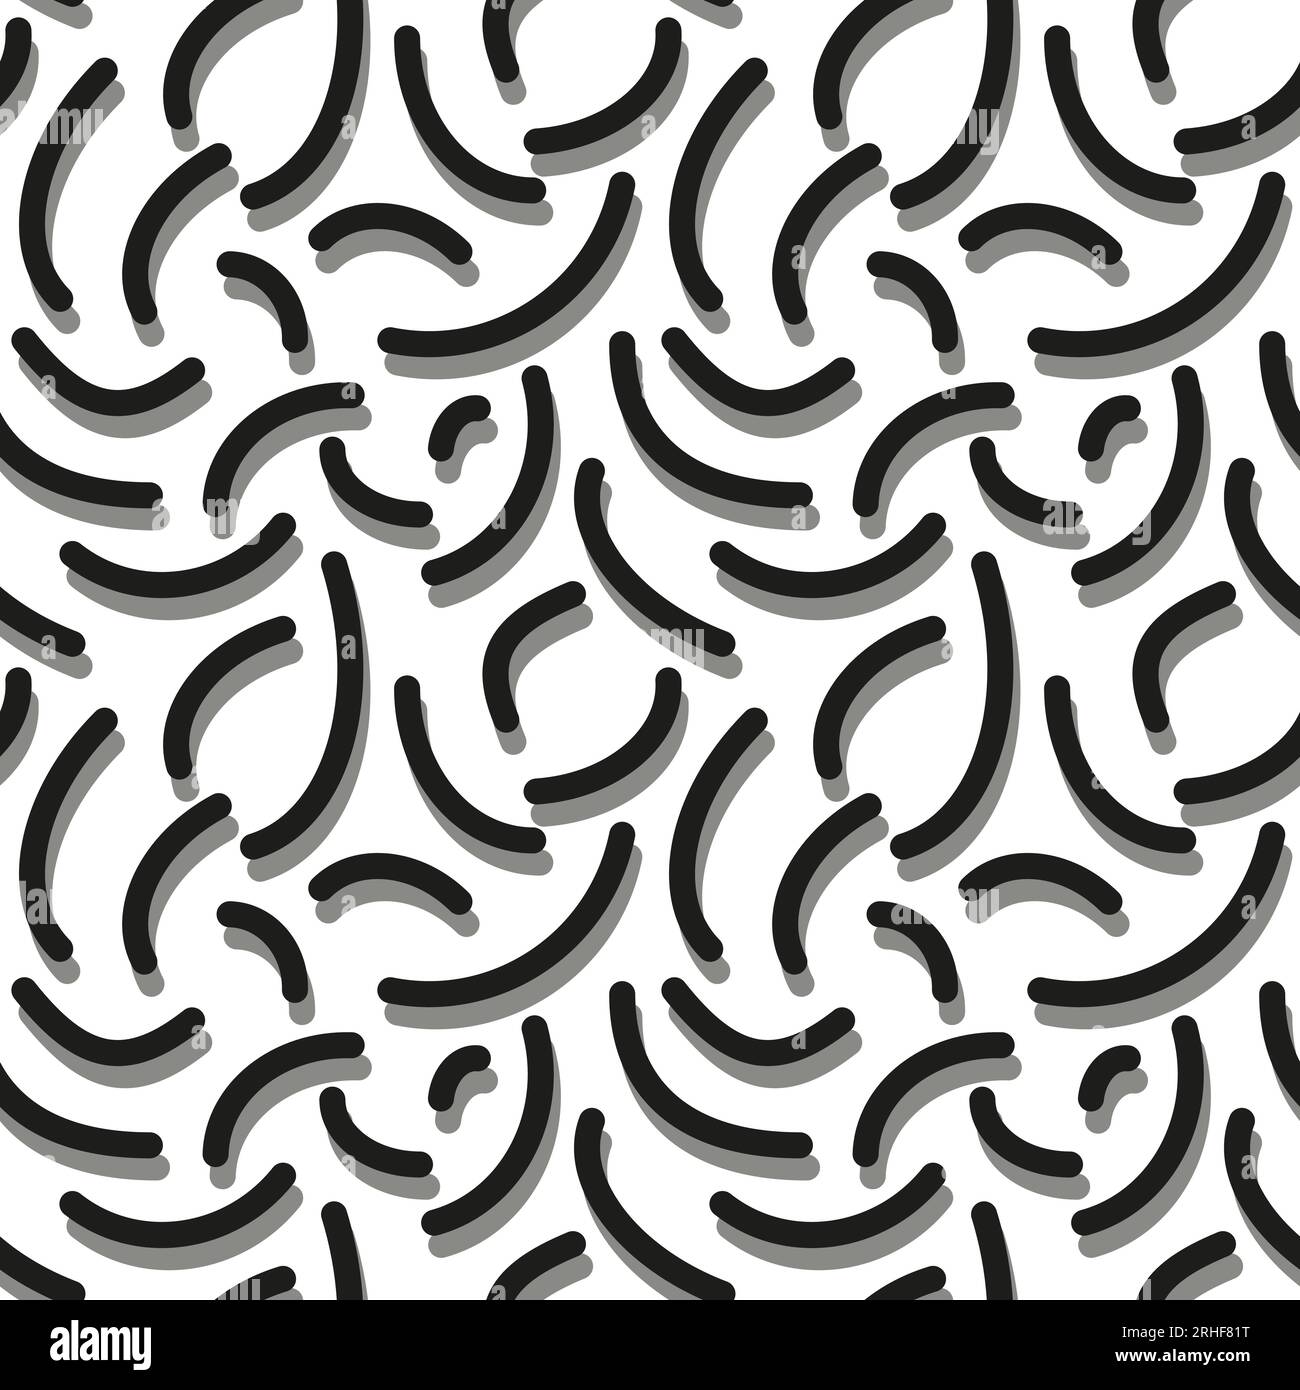 Ripetizione geometrica senza giunzioni di archi semplici. Vettore monocromatico nero, bianco e grigio. Linee semicircolari in stile doodle. Per abiti stampati, tessuti, tessuti Illustrazione Vettoriale